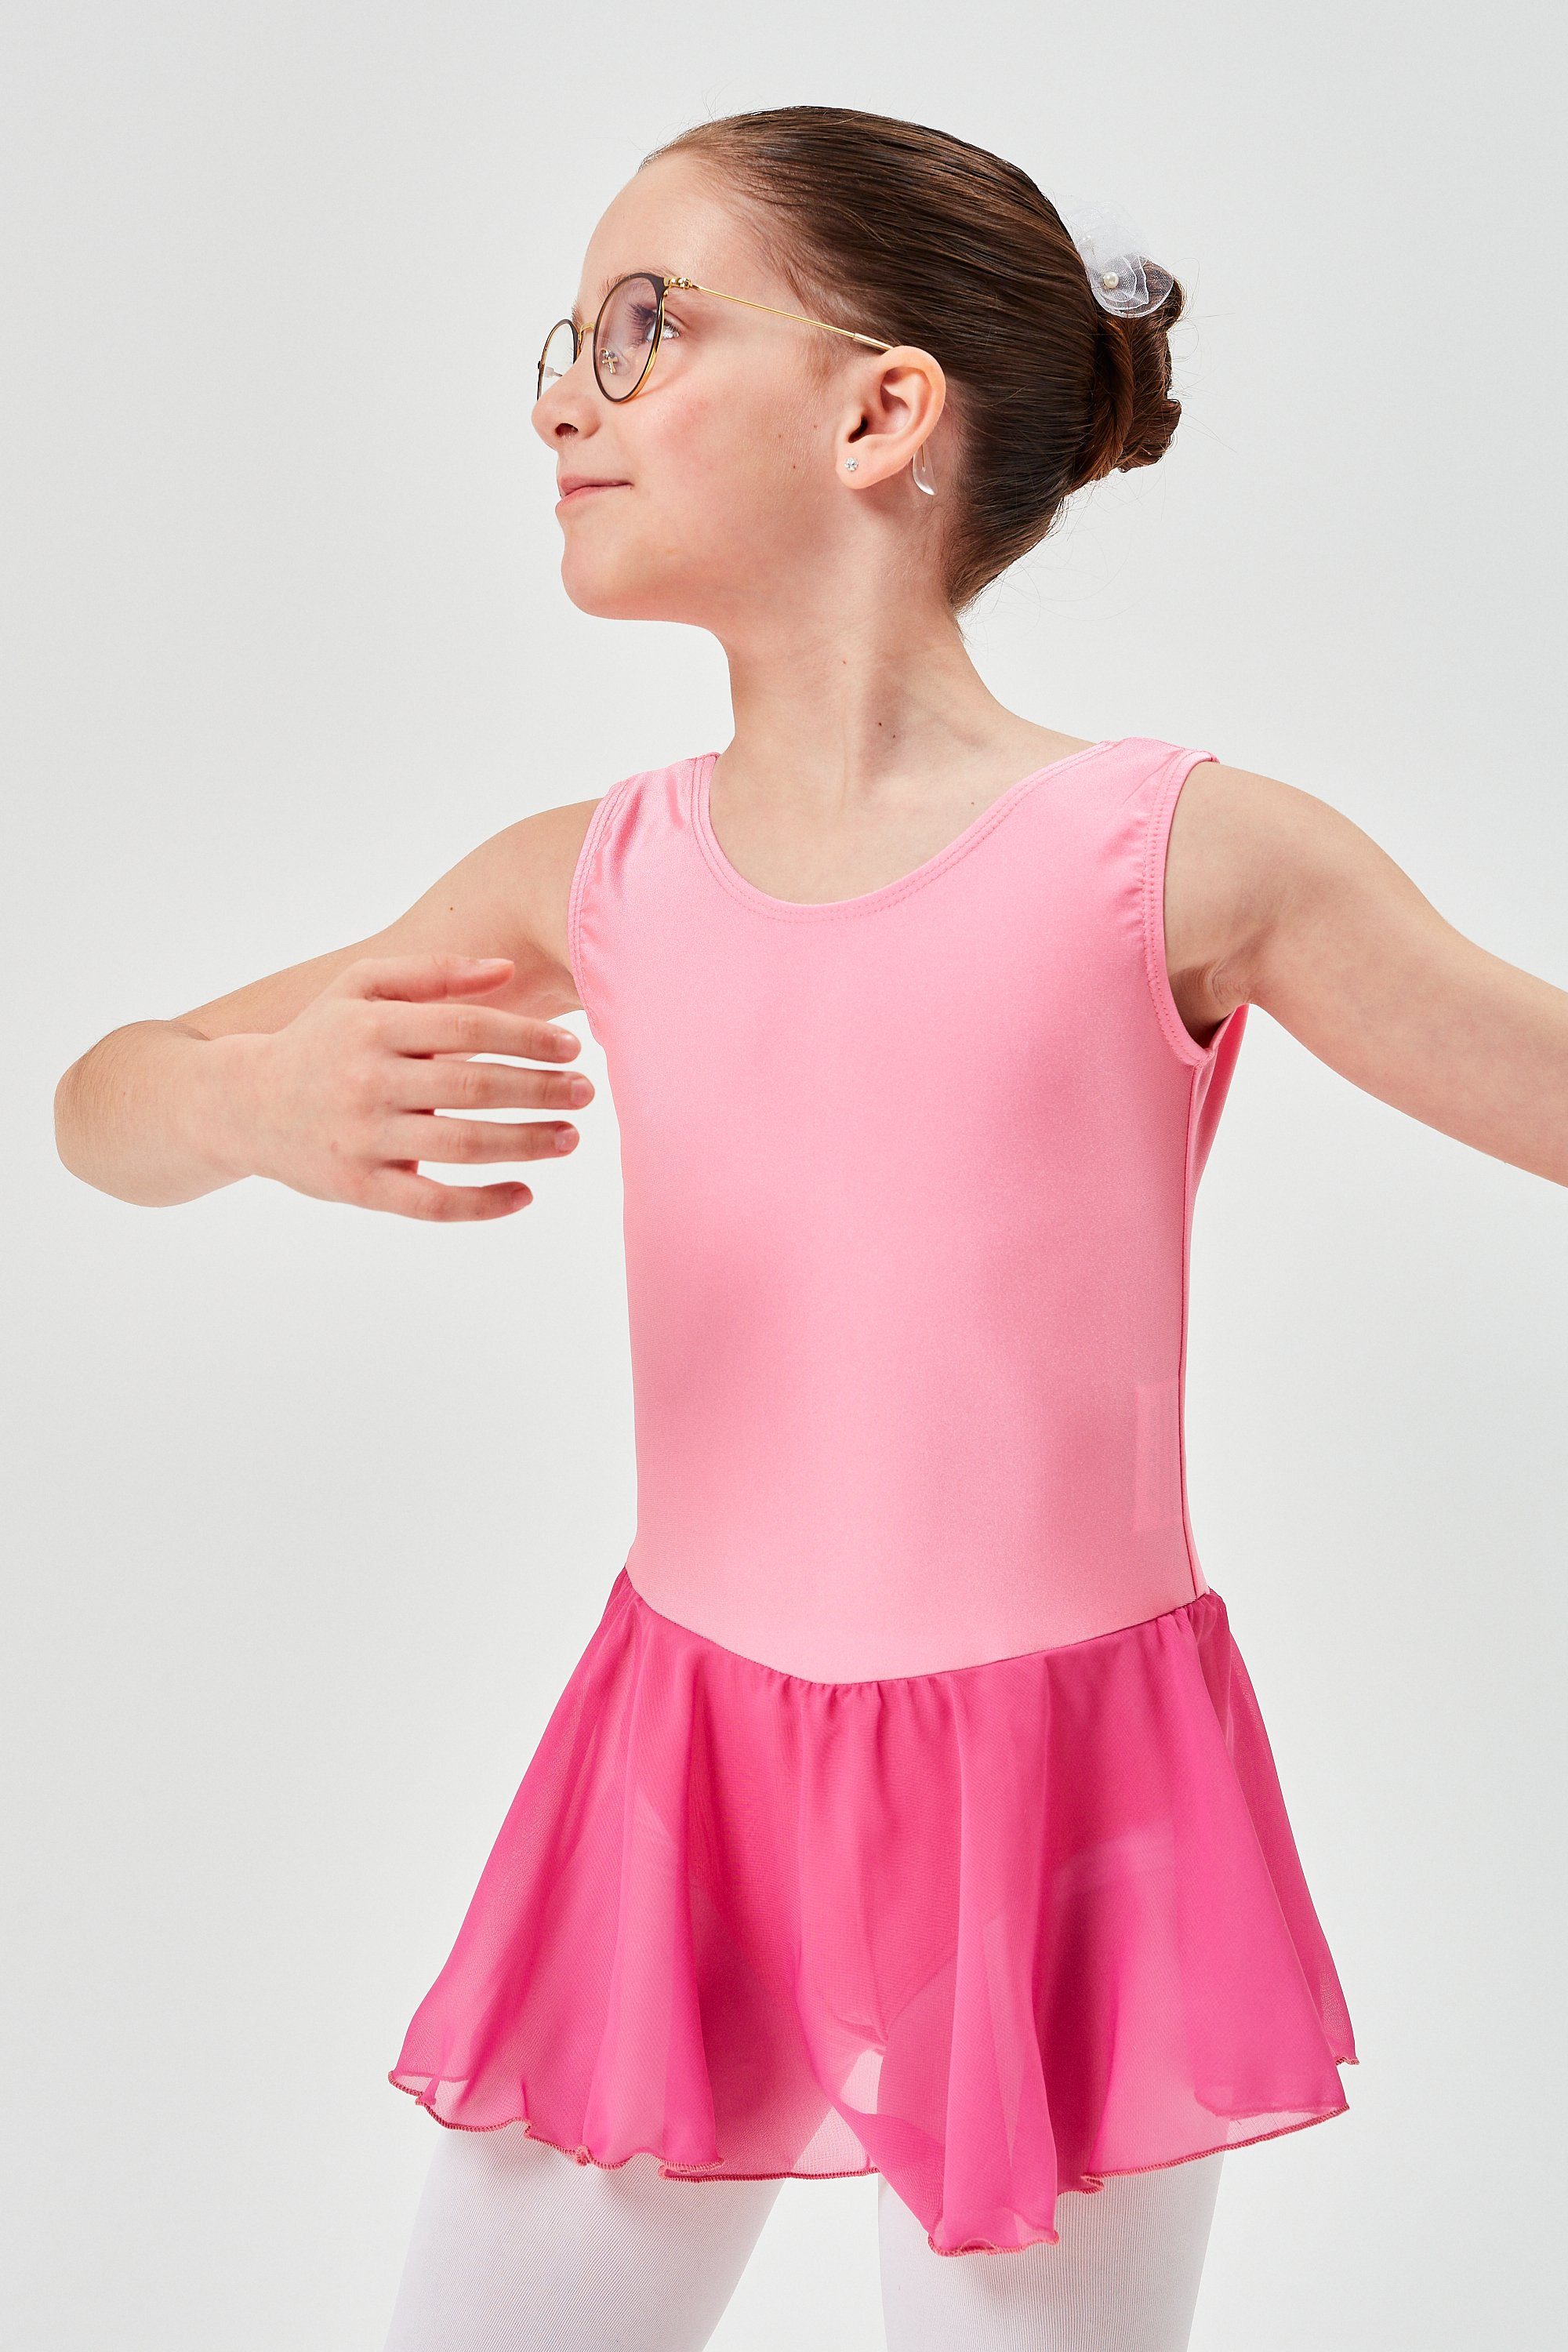 tanzmuster Chiffonkleid Ballettkleid Polly aus glänzendem Lycra Ballett Trikot für Mädchen mit Chiffonrock altrosa